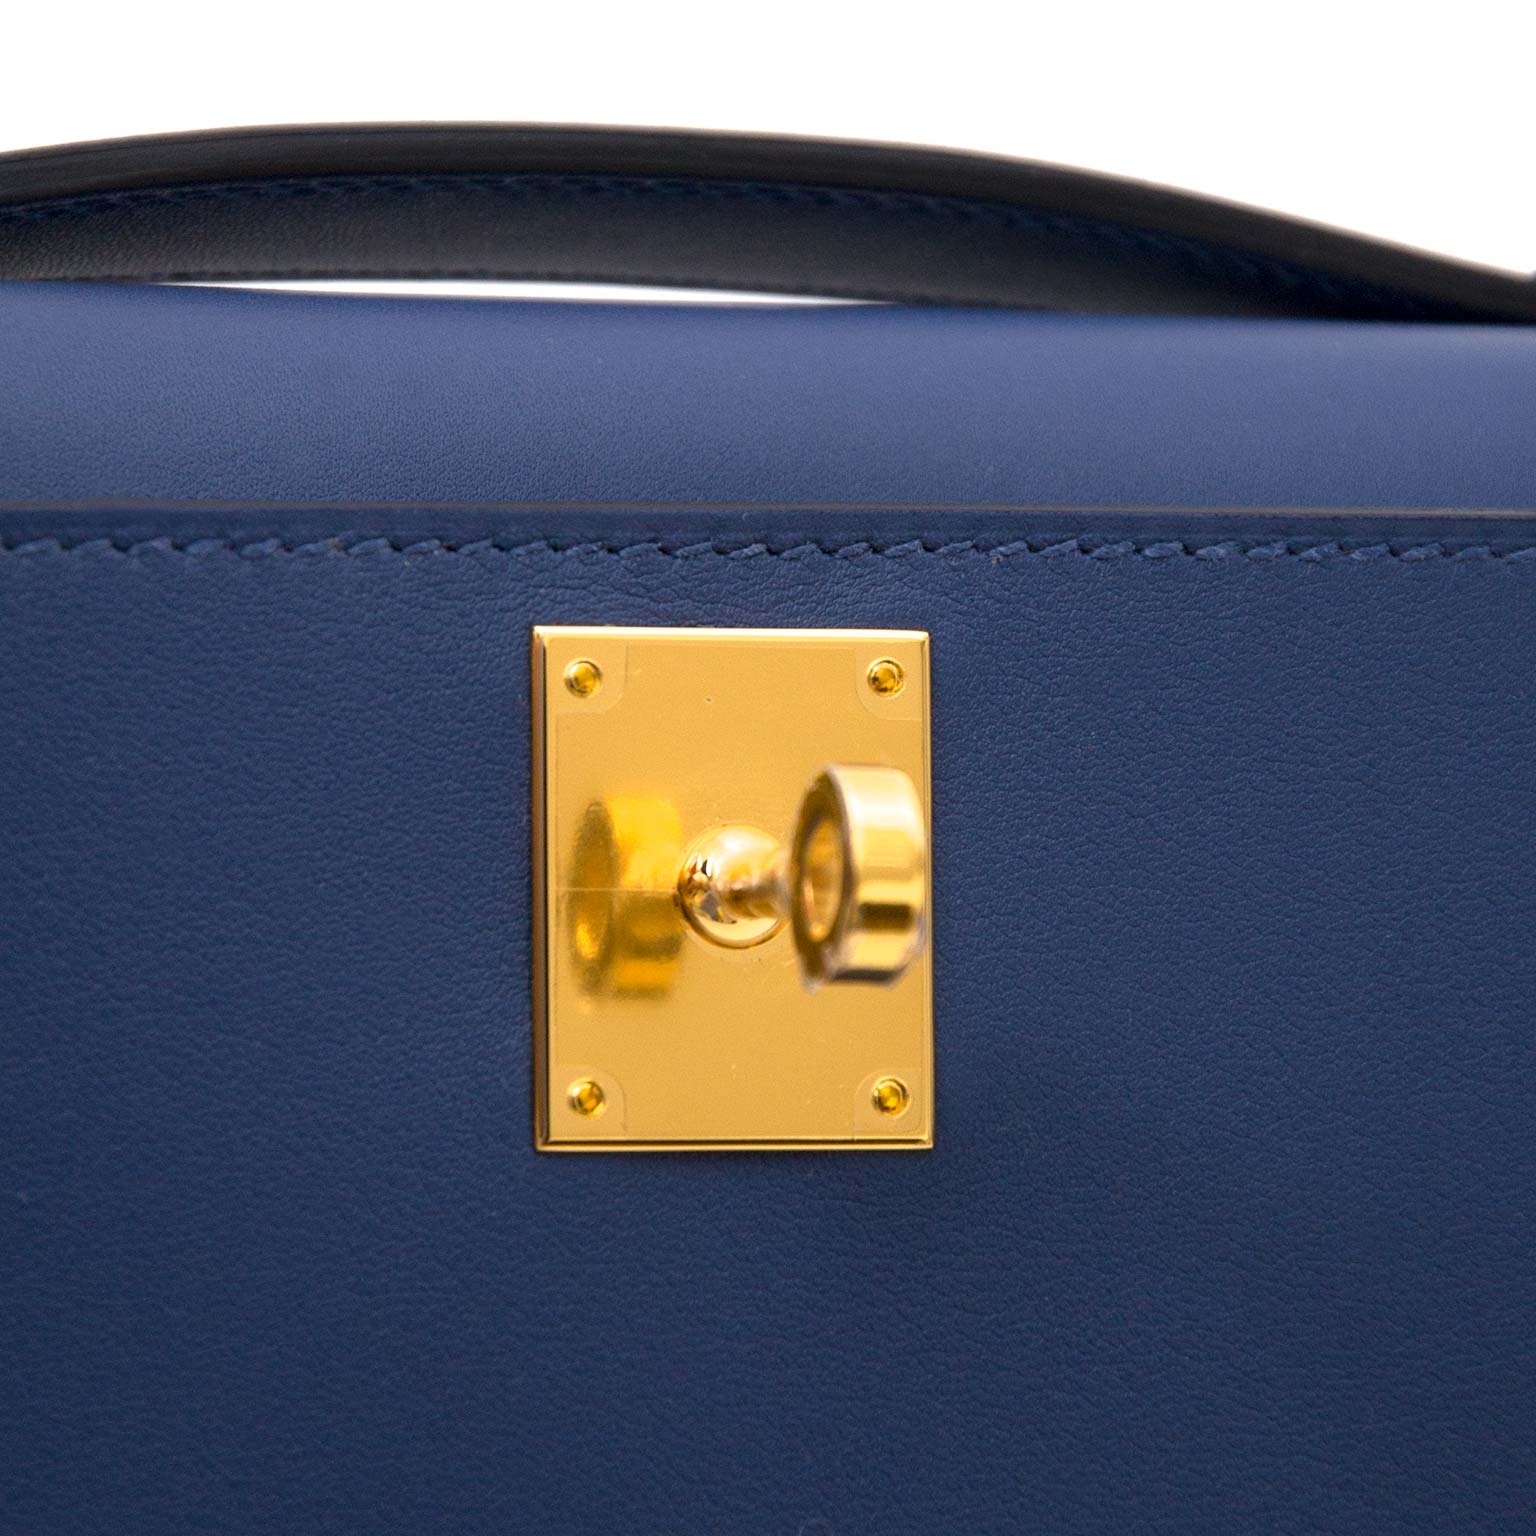 Brand New Hermes Kelly Pochette Bag Mini Swift Glycine ○ Labellov